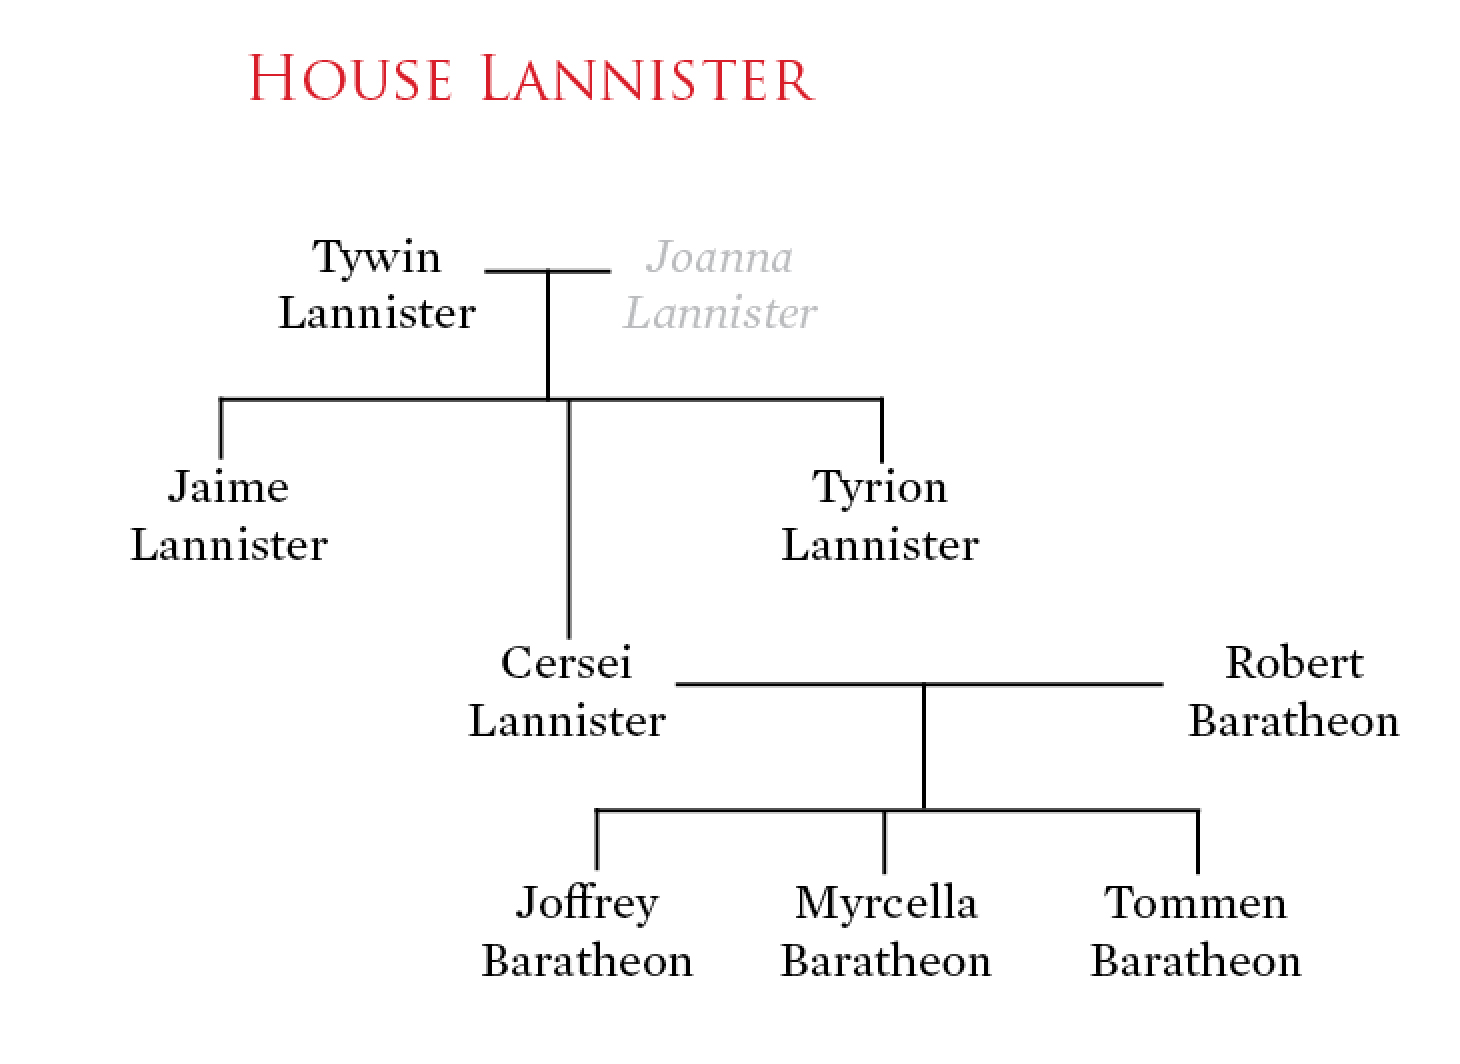 stark family tree